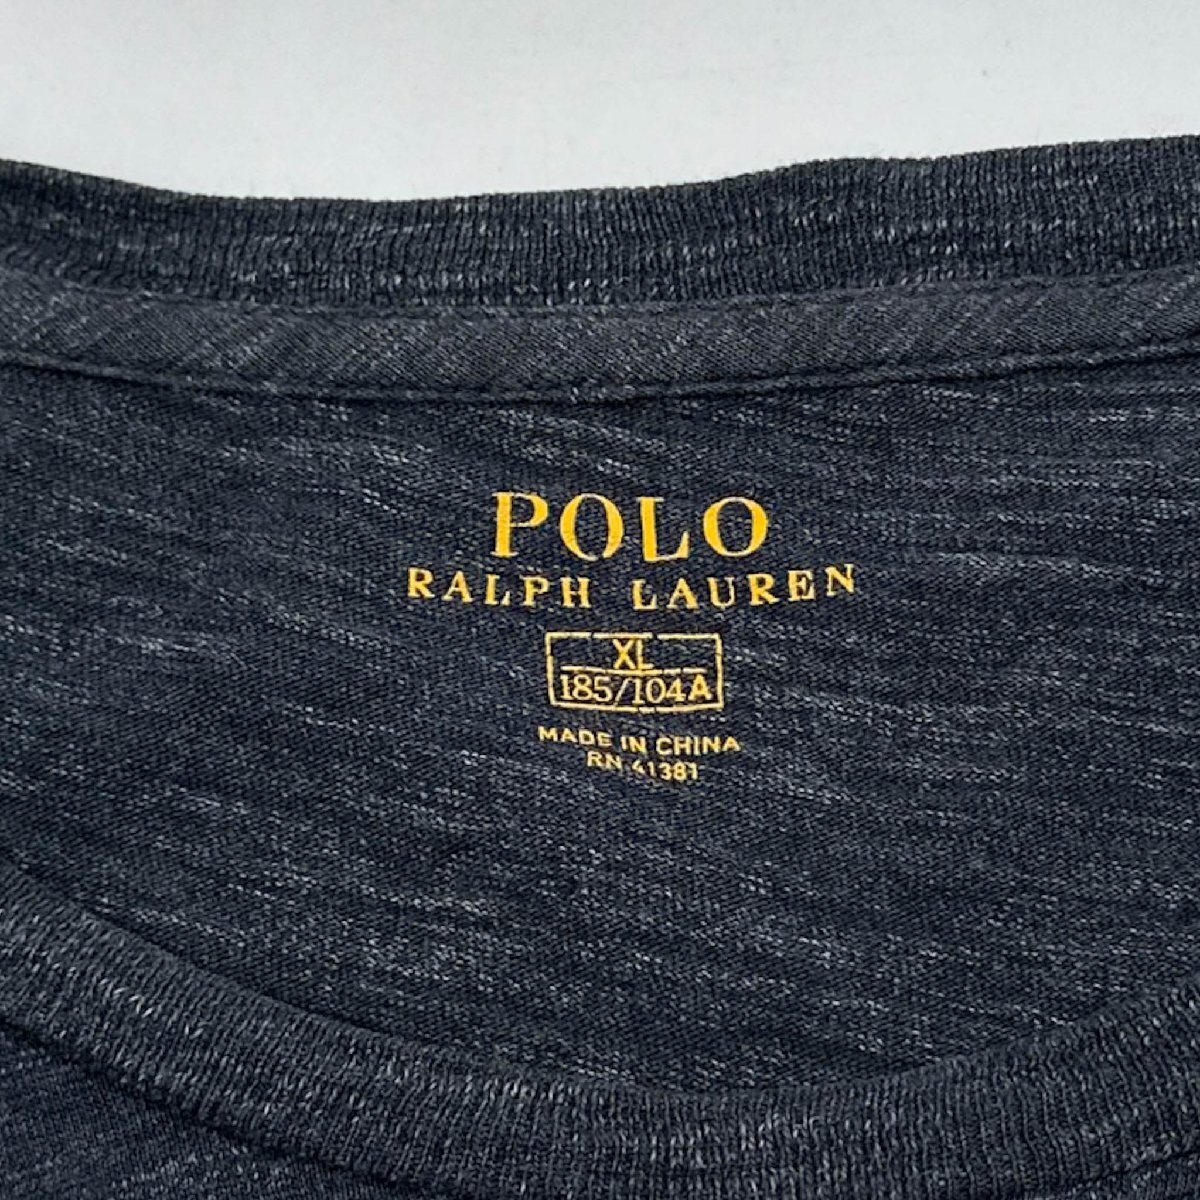 POLO RALPH LAUREN ポロラルフローレン ポニー刺繍 長袖Tシャツ ロンT カットソー XL / ネイビー系 メンズ アメカジ ビッグサイズ_画像4